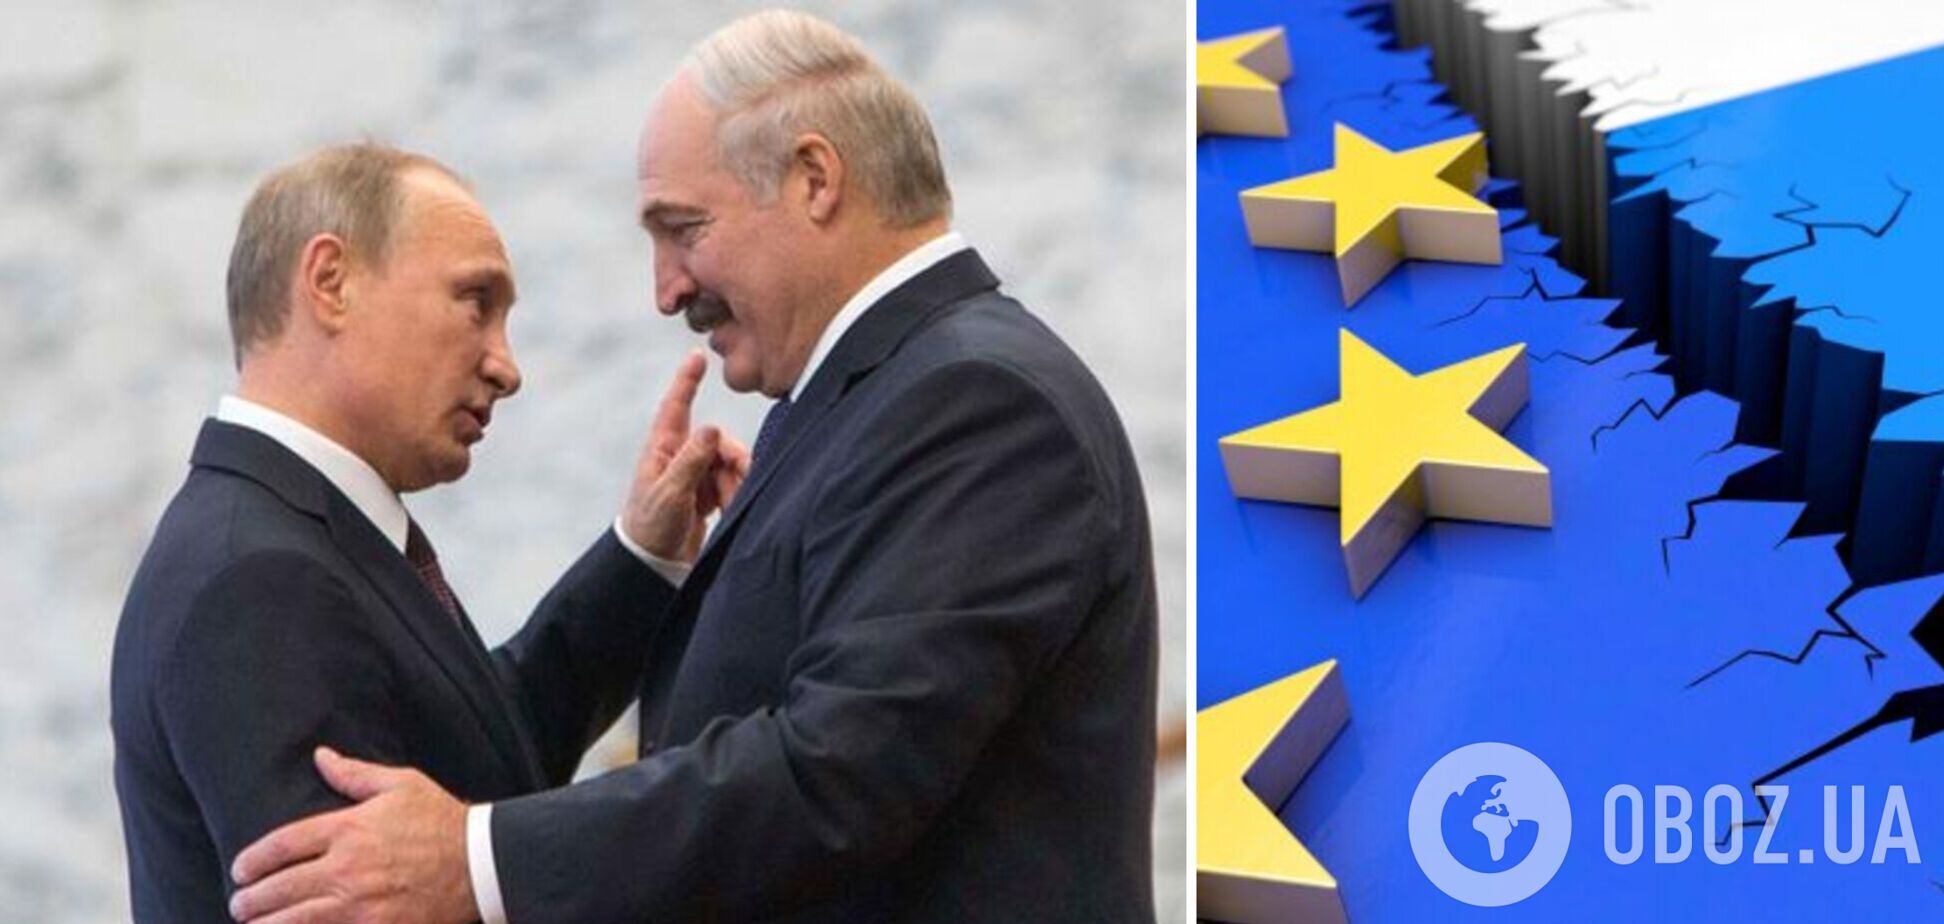 Лукашенко заявил, что будущее Европы только с Россией и Беларусью